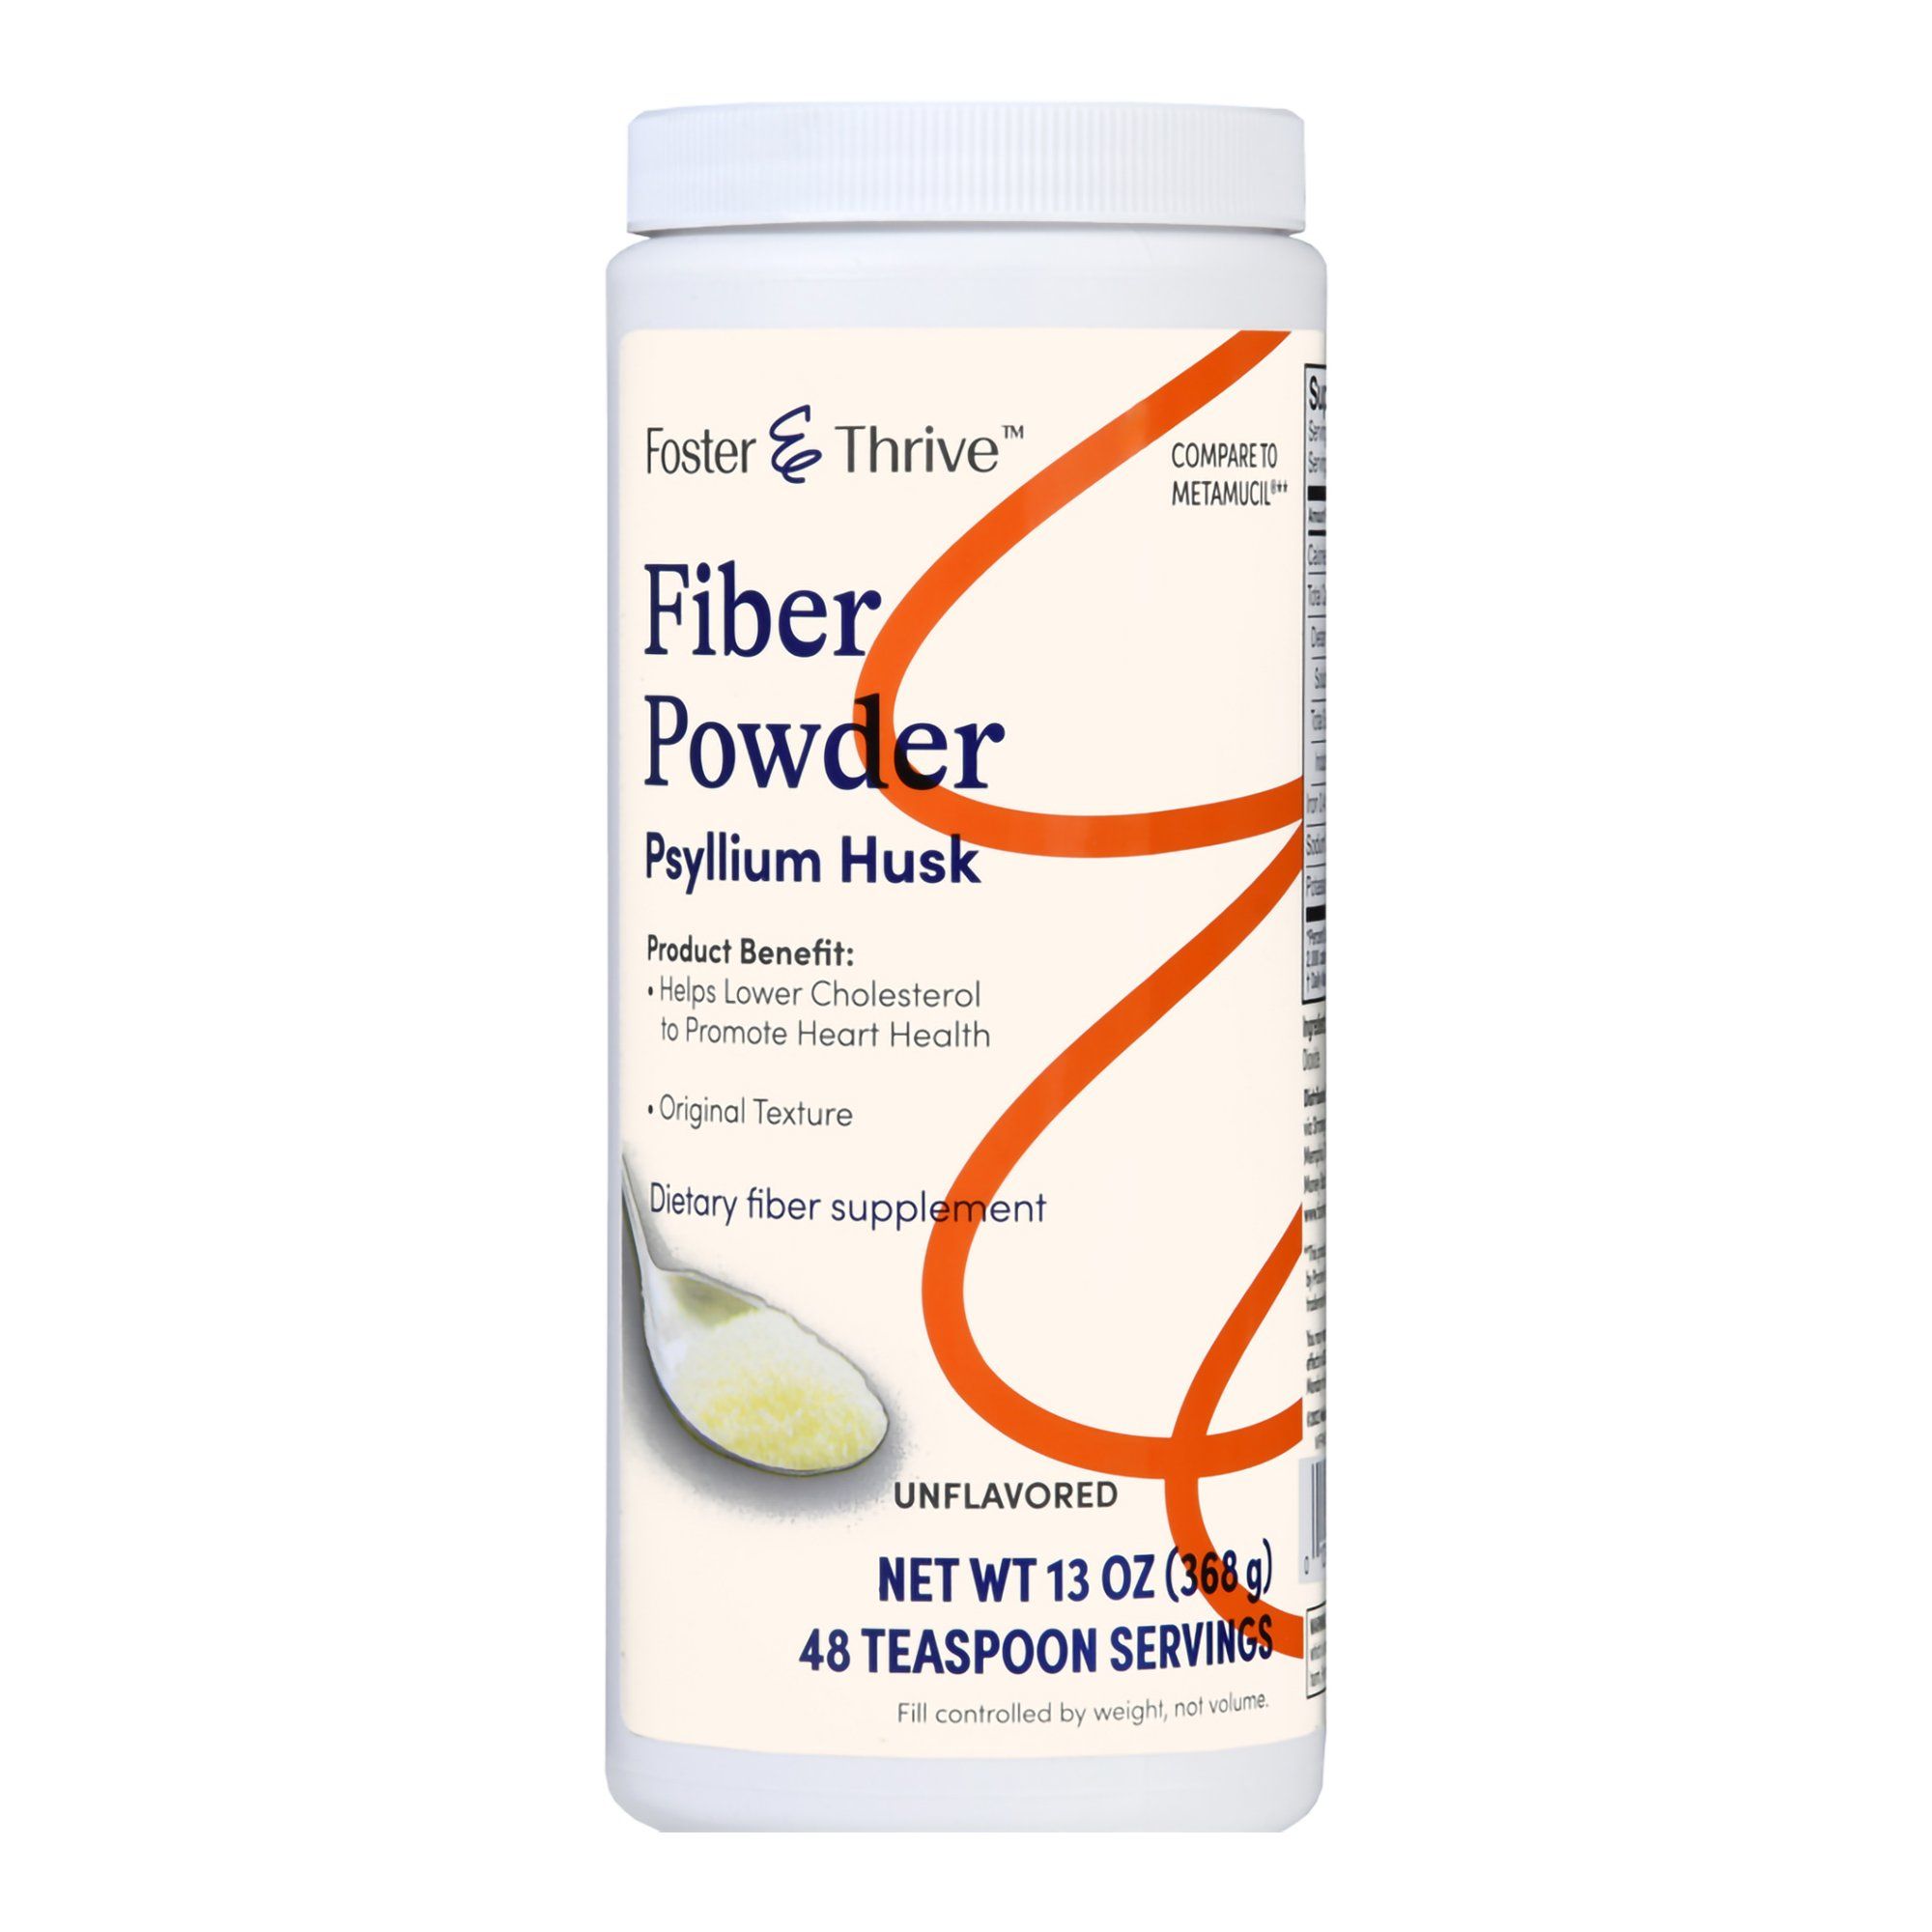 Foster & Thrive Fiber Powder, Original Texture, Unflavored - 13 oz